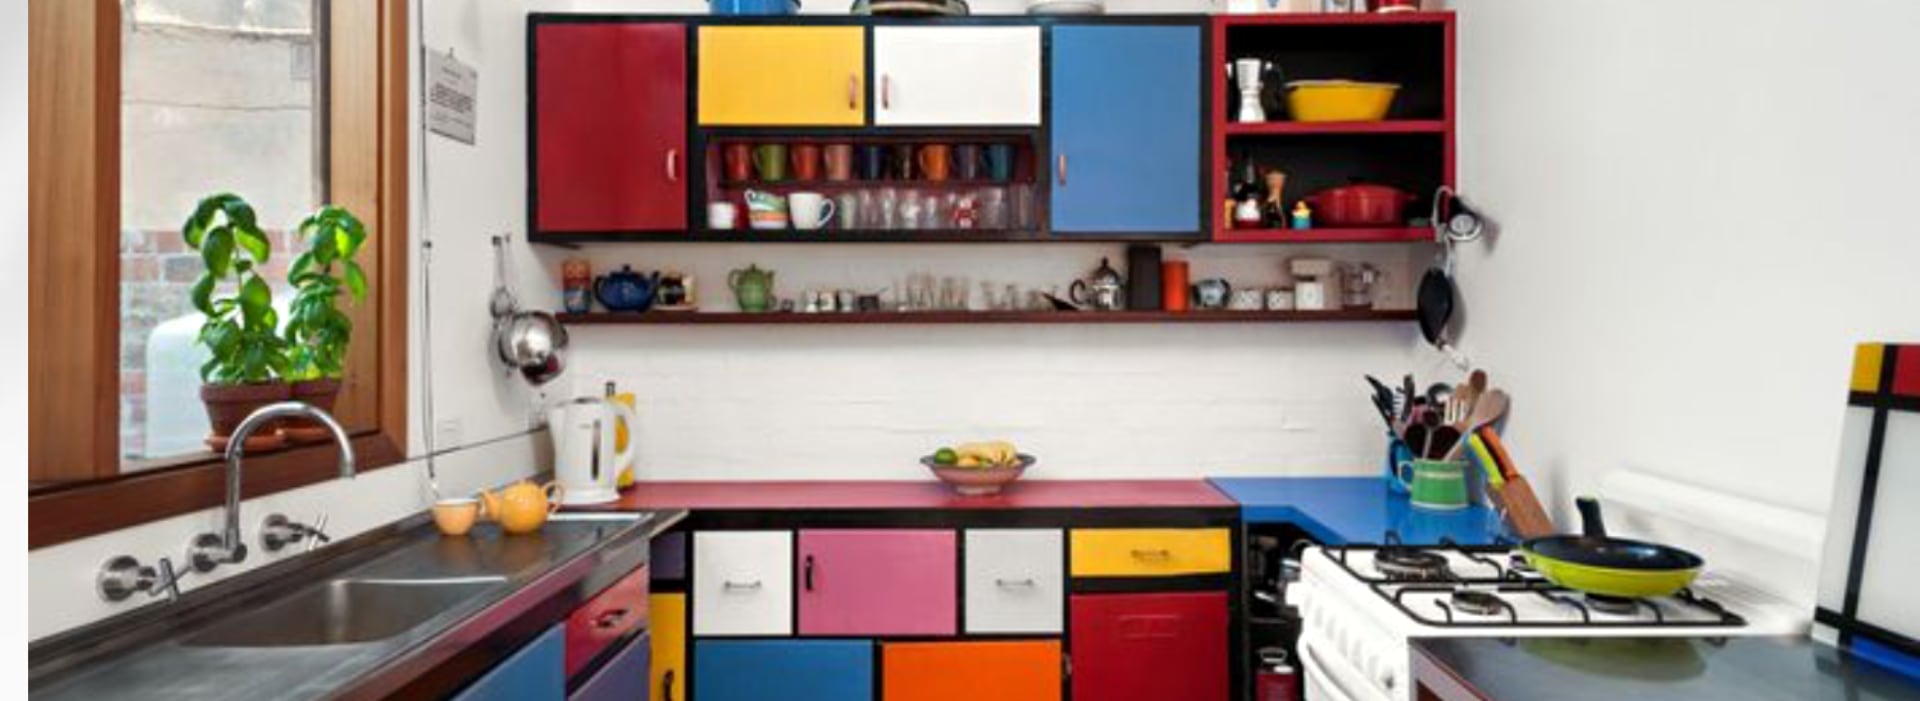 Colour your kitchen